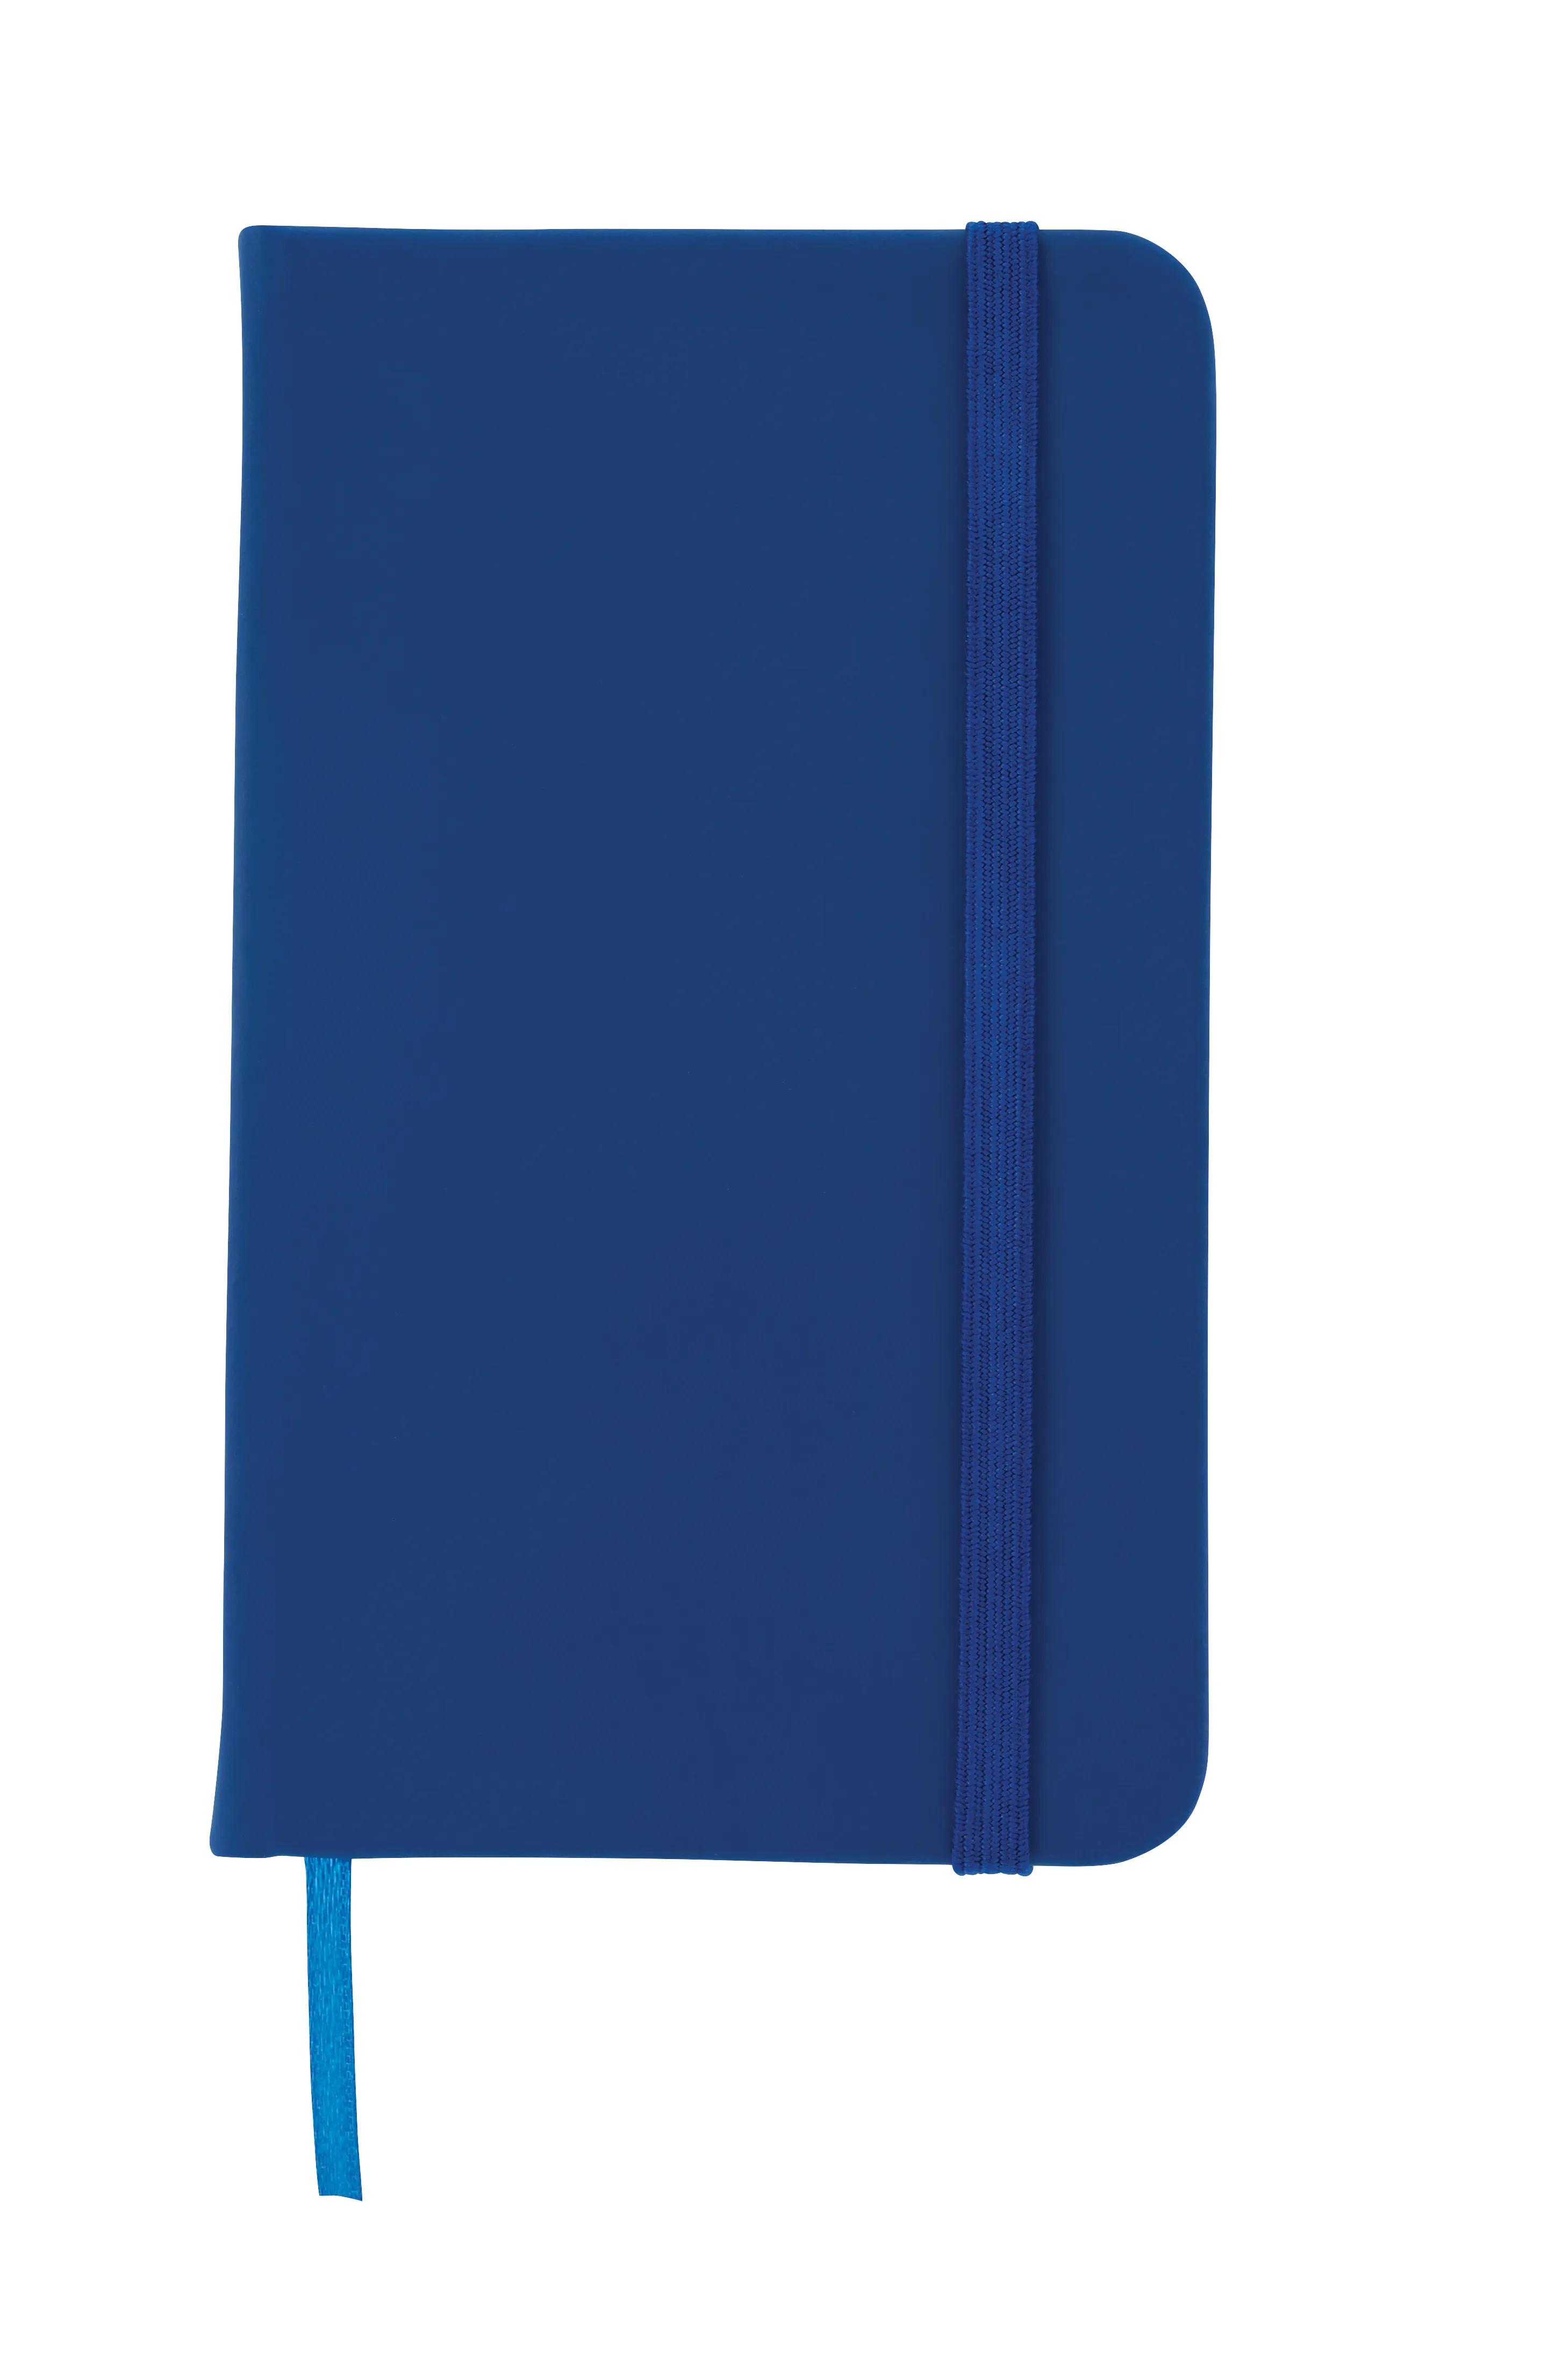 3” x 5” Journal Notebook 2 of 9